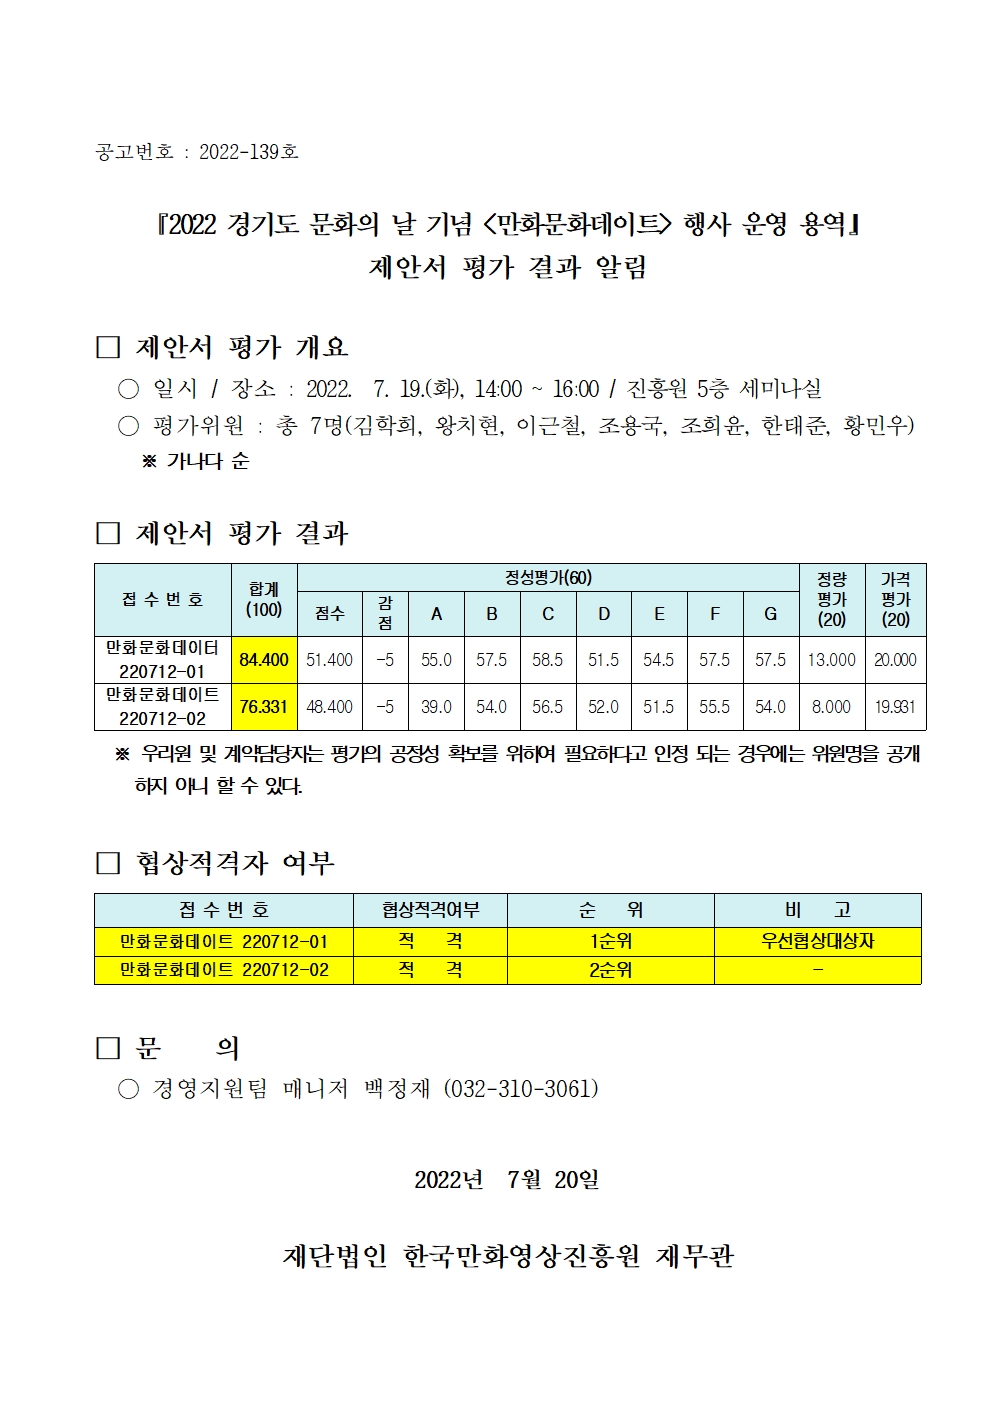 『2022 경기도 문화의 날 기념 (만화문화데이트) 행사 운영 용역』 제안서 평가 결과 알림